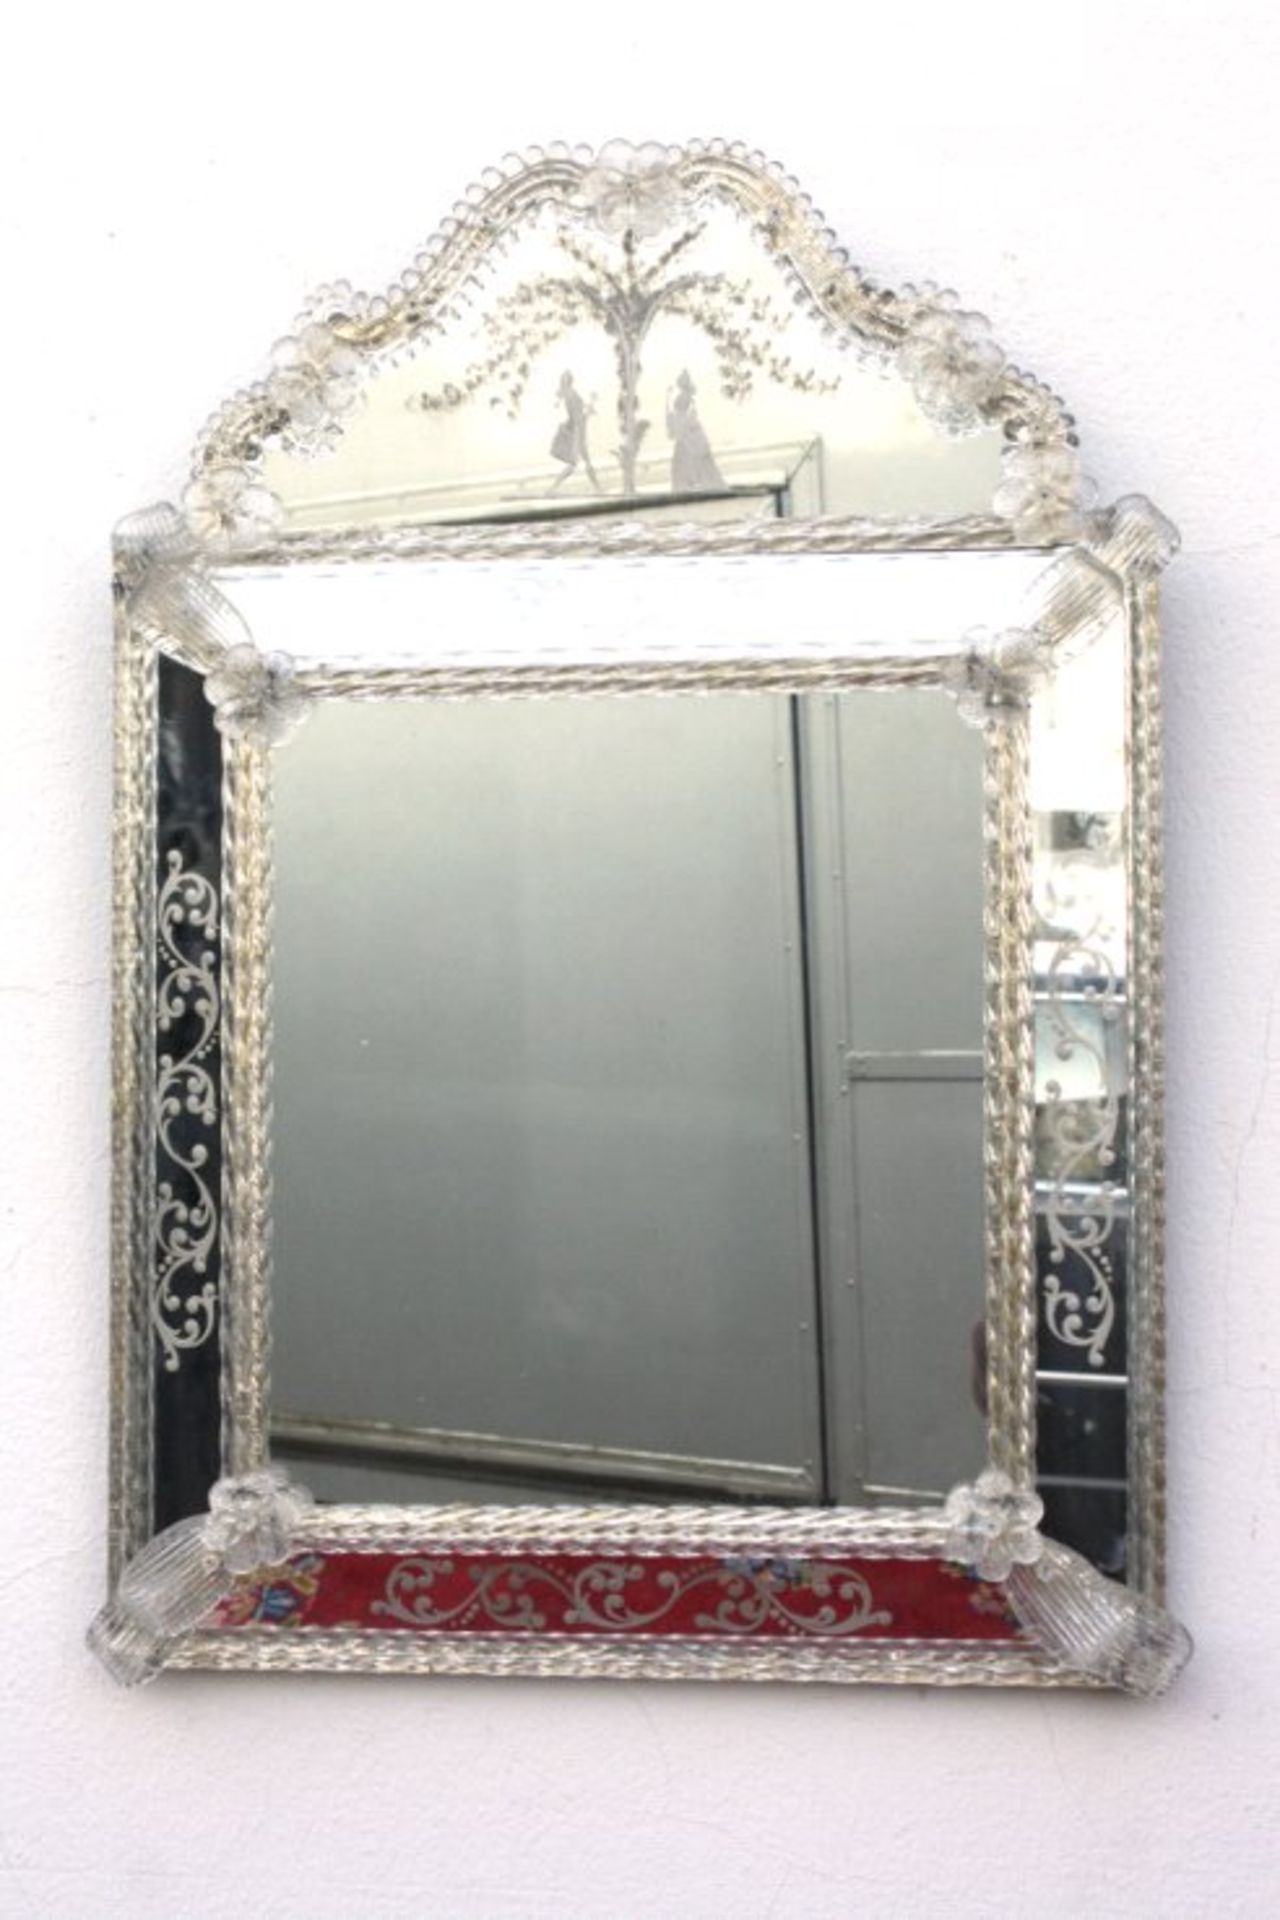 Murano Spiegel 20. Jh.viereckige form mit Bekrönung, geschliffenes und graviertesGlas, Rahmung aus